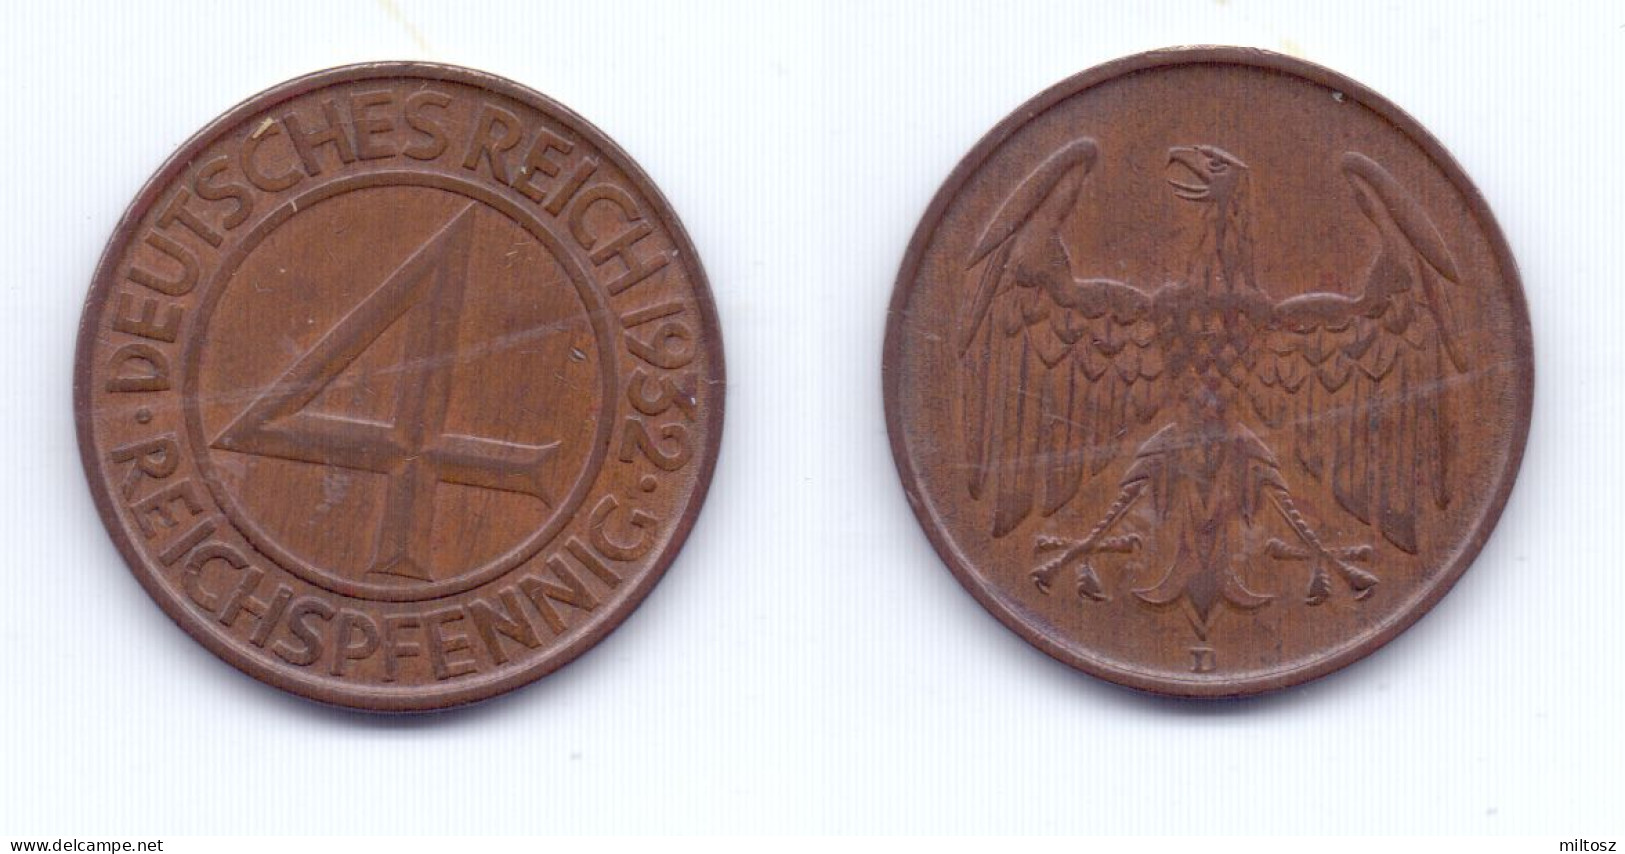 Germany 4 Reichepfennig 1932 D - 4 Reichspfennig